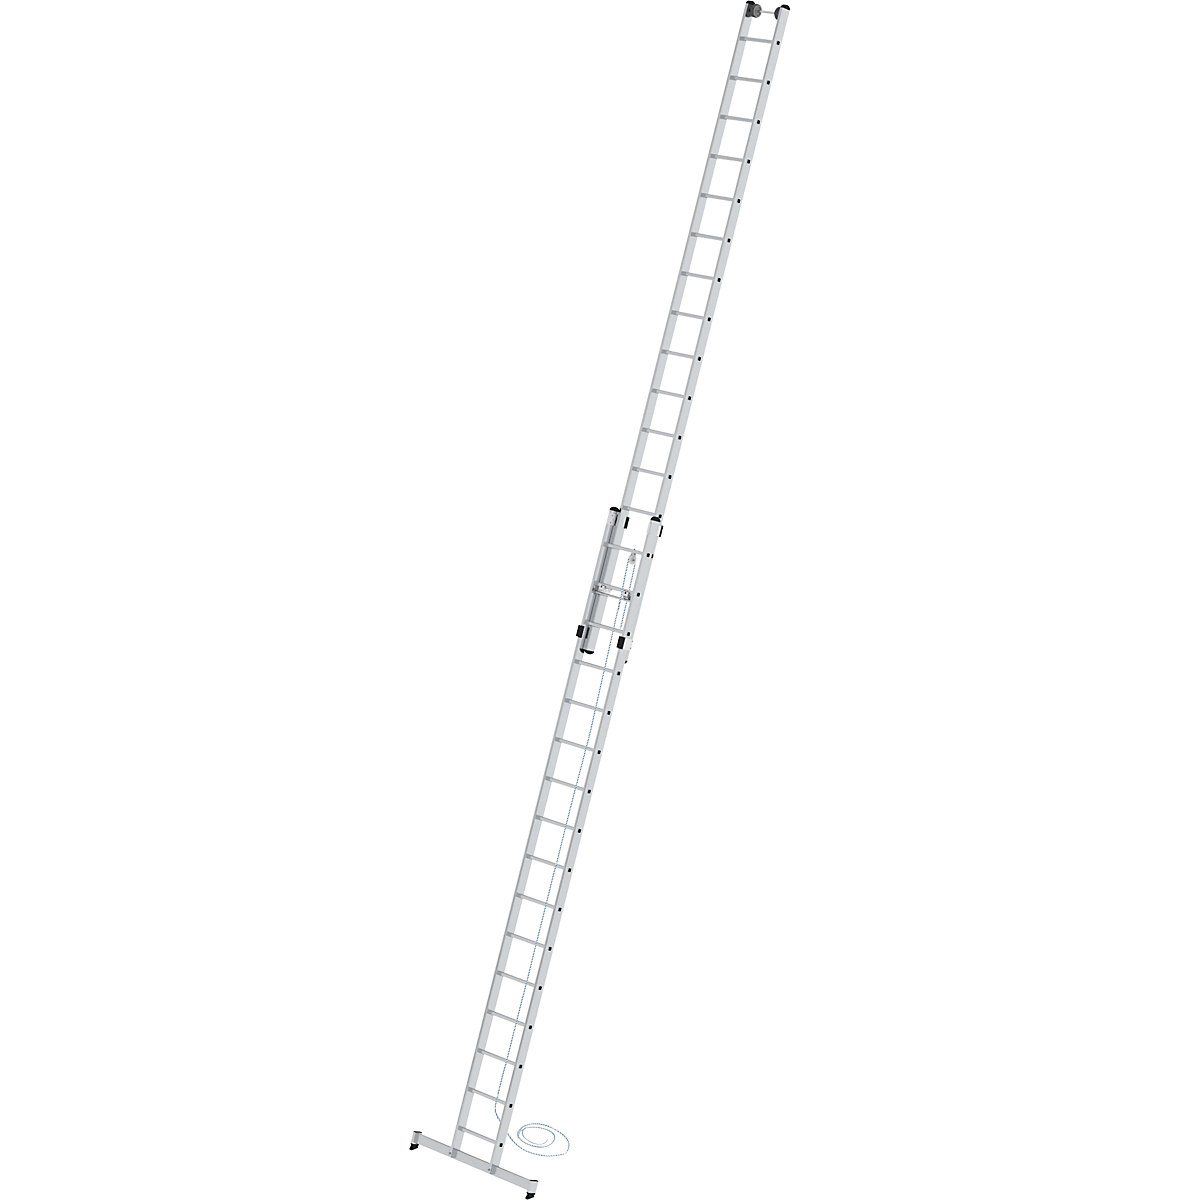 Escalera de mano de altura regulable – MUNK, escalera con cable, de 2 tramos con traviesa nivello®, 2 x 16 peldaños-3